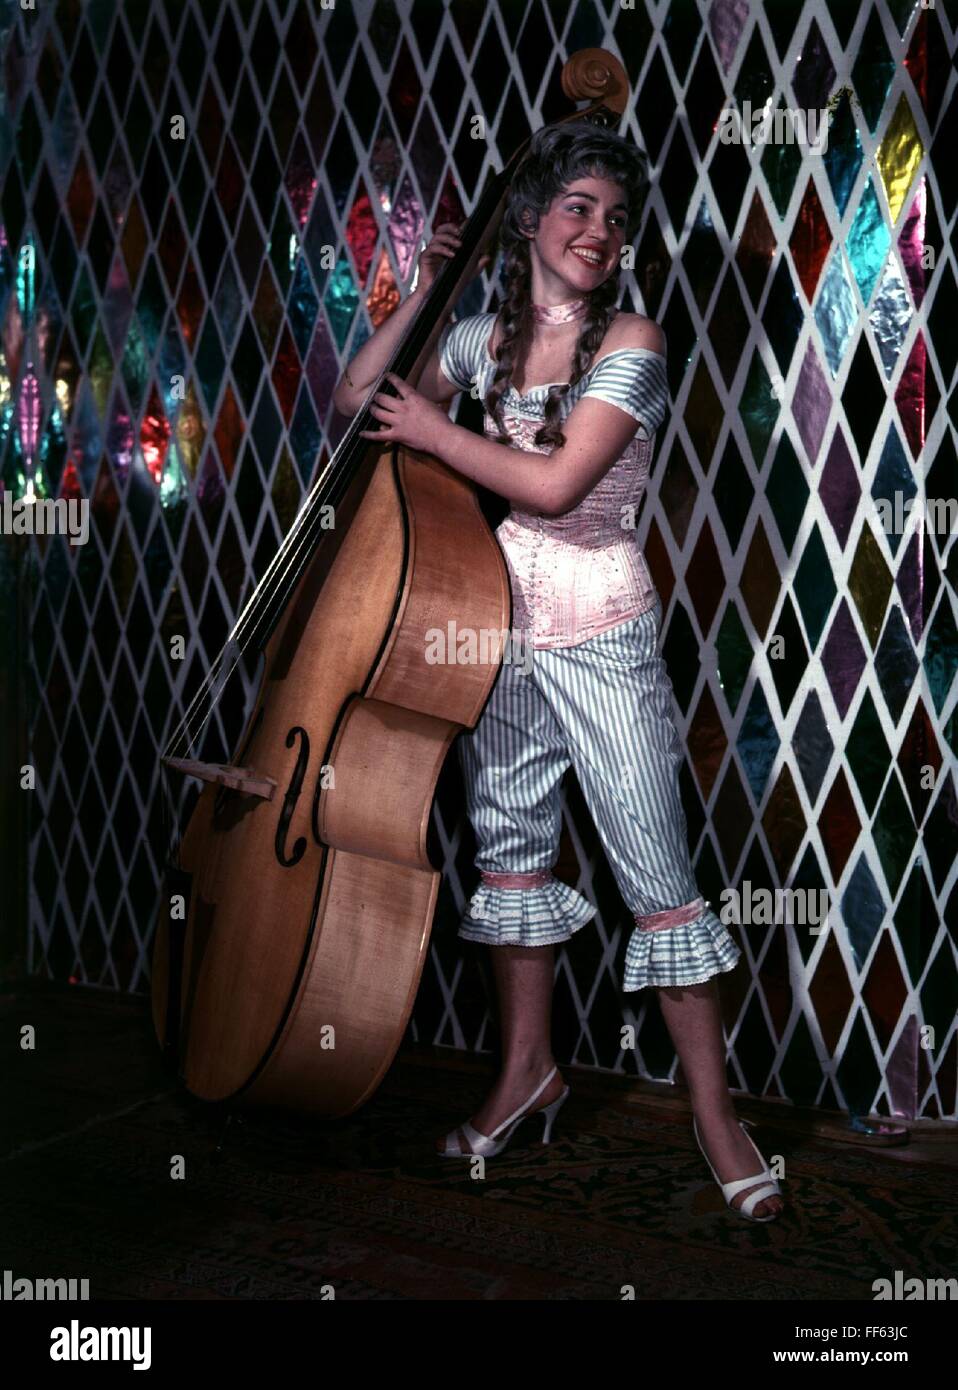 fasching, junge Frau im Kostüm mit Corsage und Perücke, Kontrabass haltend, Zusatzrechte-Clearenzen-nicht lieferbar Stockfoto